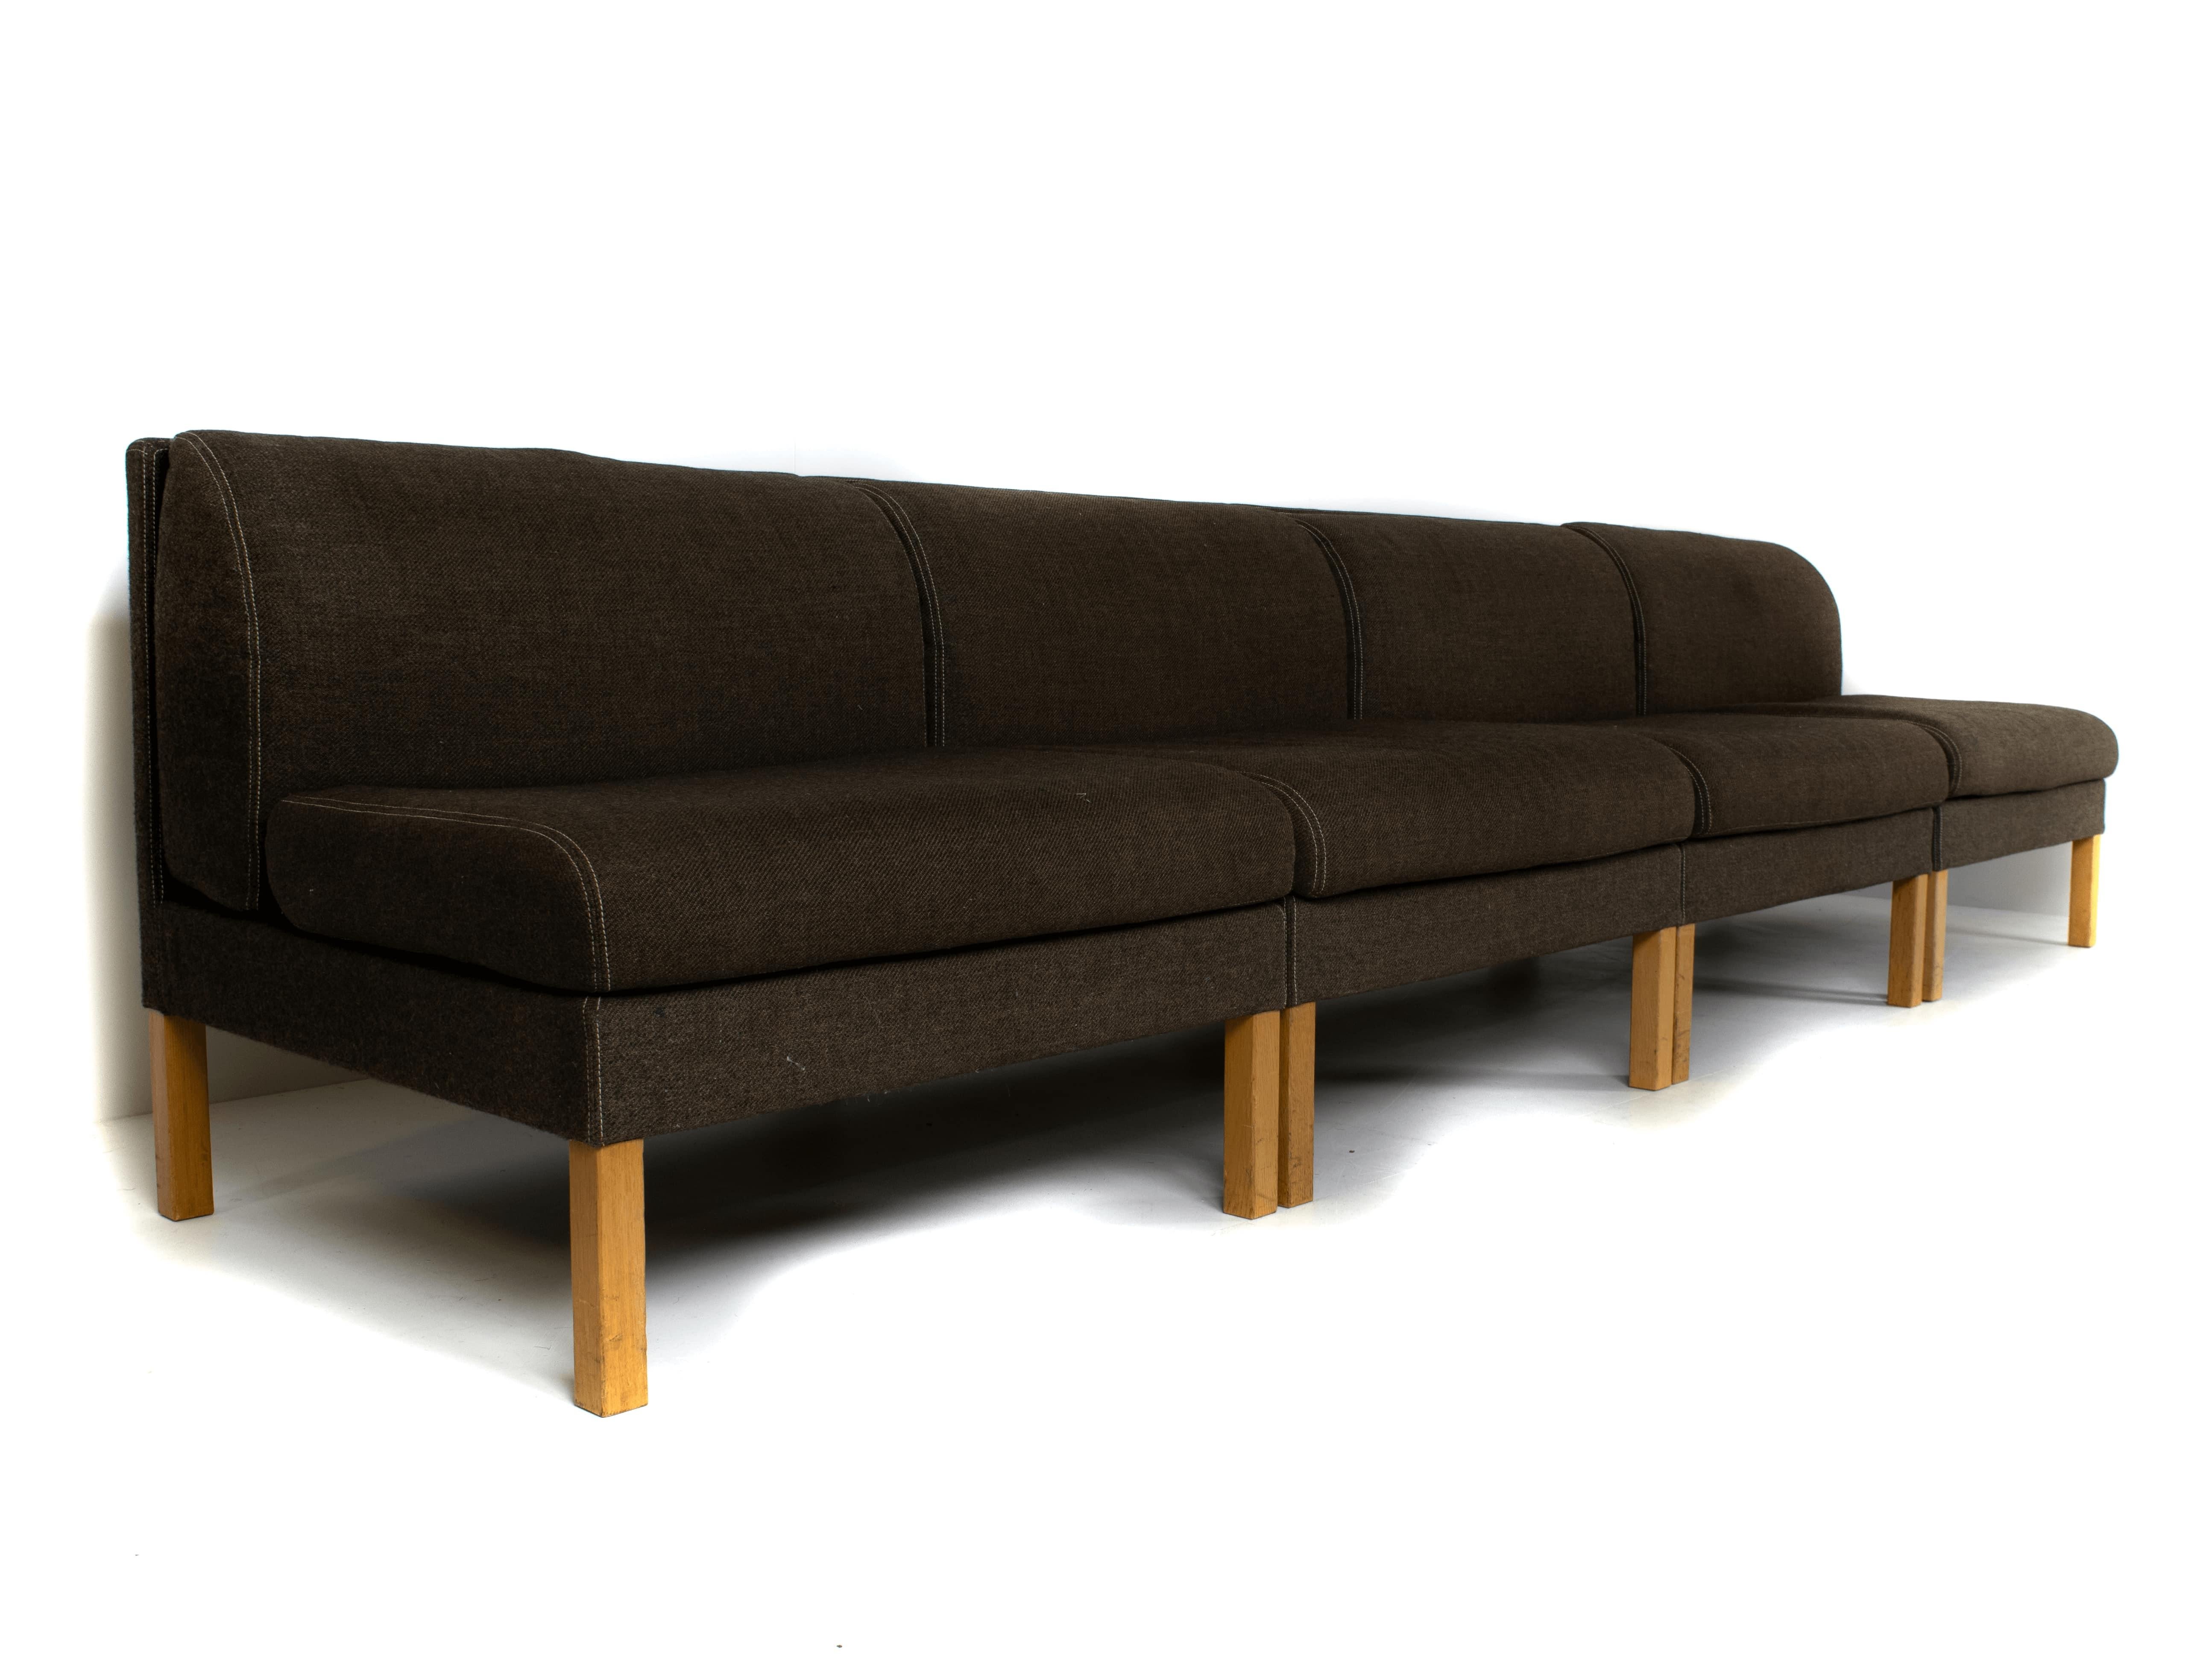 Canapé modulaire Bernt Petersen en chêne et tissu saga 180 du Danemark 1980. Ce canapé modulaire peut être placé dans plusieurs positions, ce qui donne au total un canapé de ~316 cm. Le tissu brun/gris est en bon état et ne présente que de légères